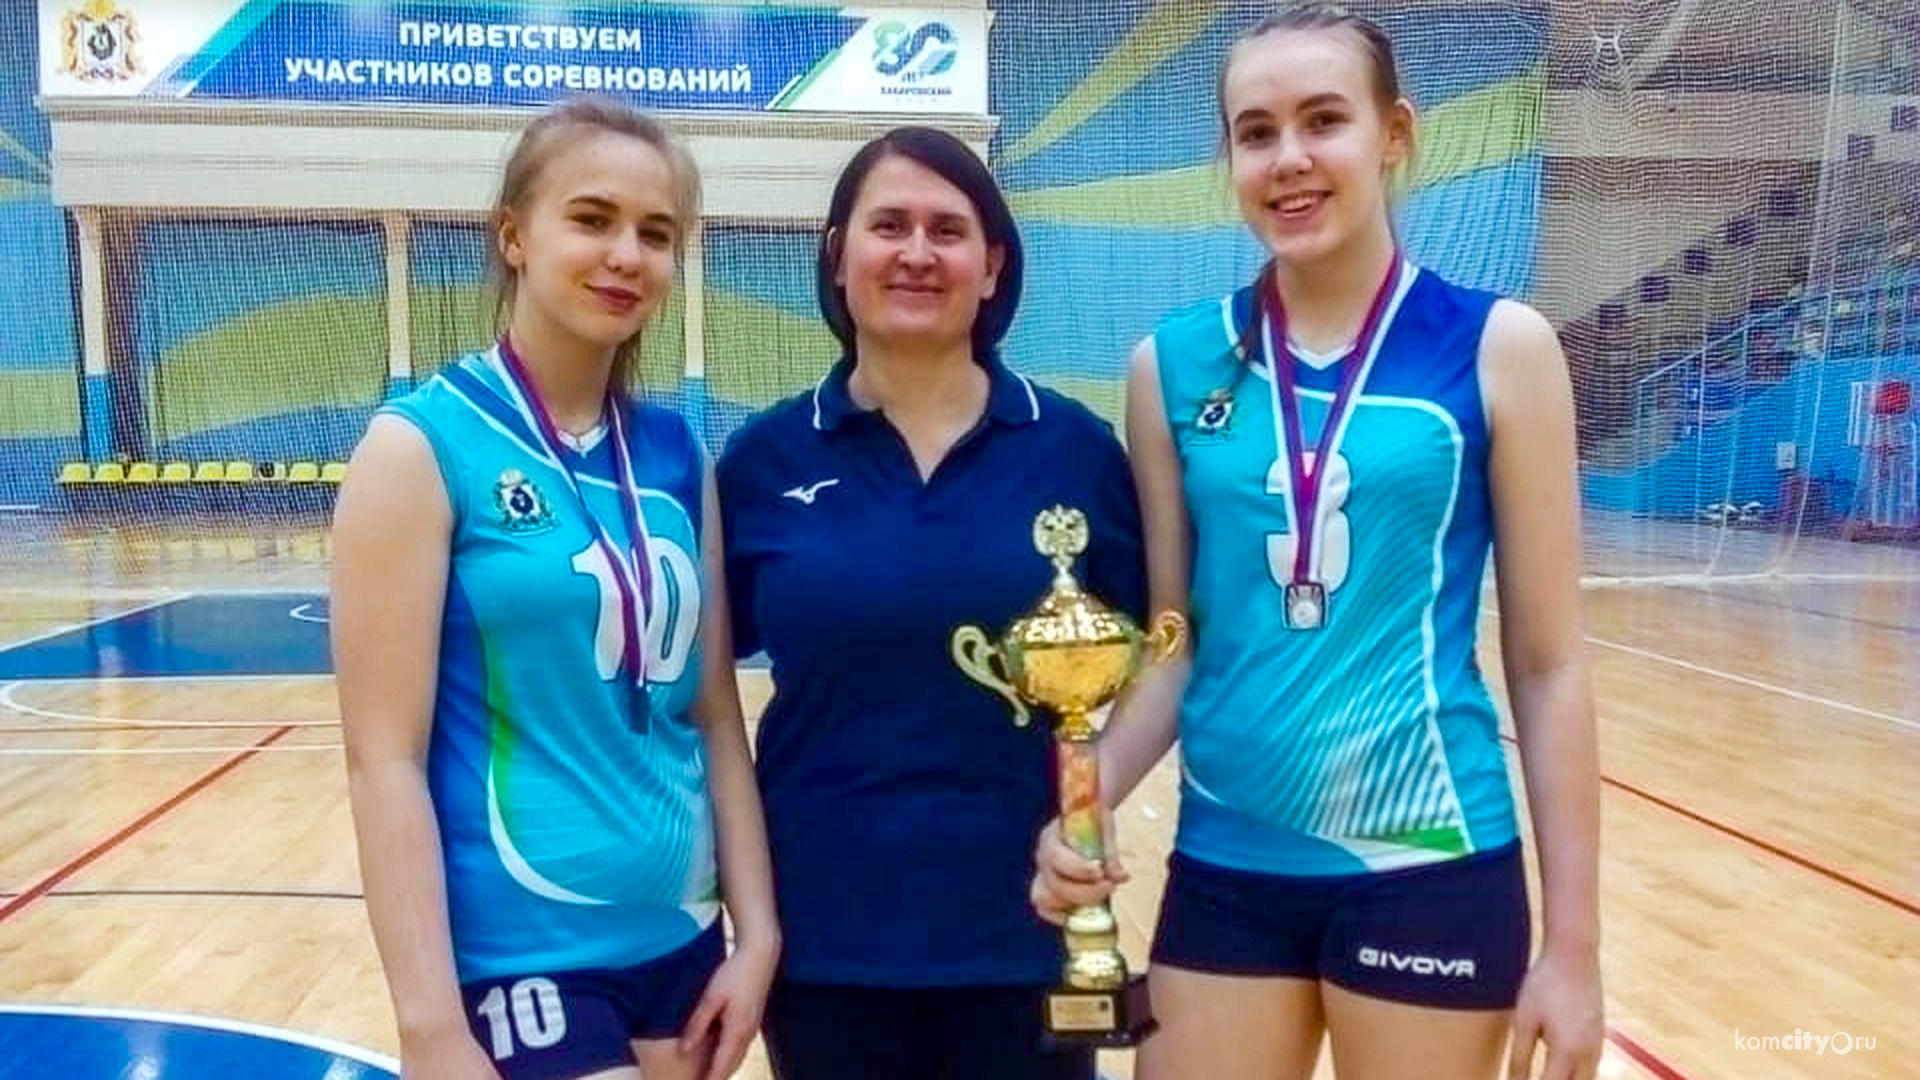 Волейболисты Комсомольска-на-Амуре в составе сборной края взяли награды на юношеской спартакиаде среди команд ДФО